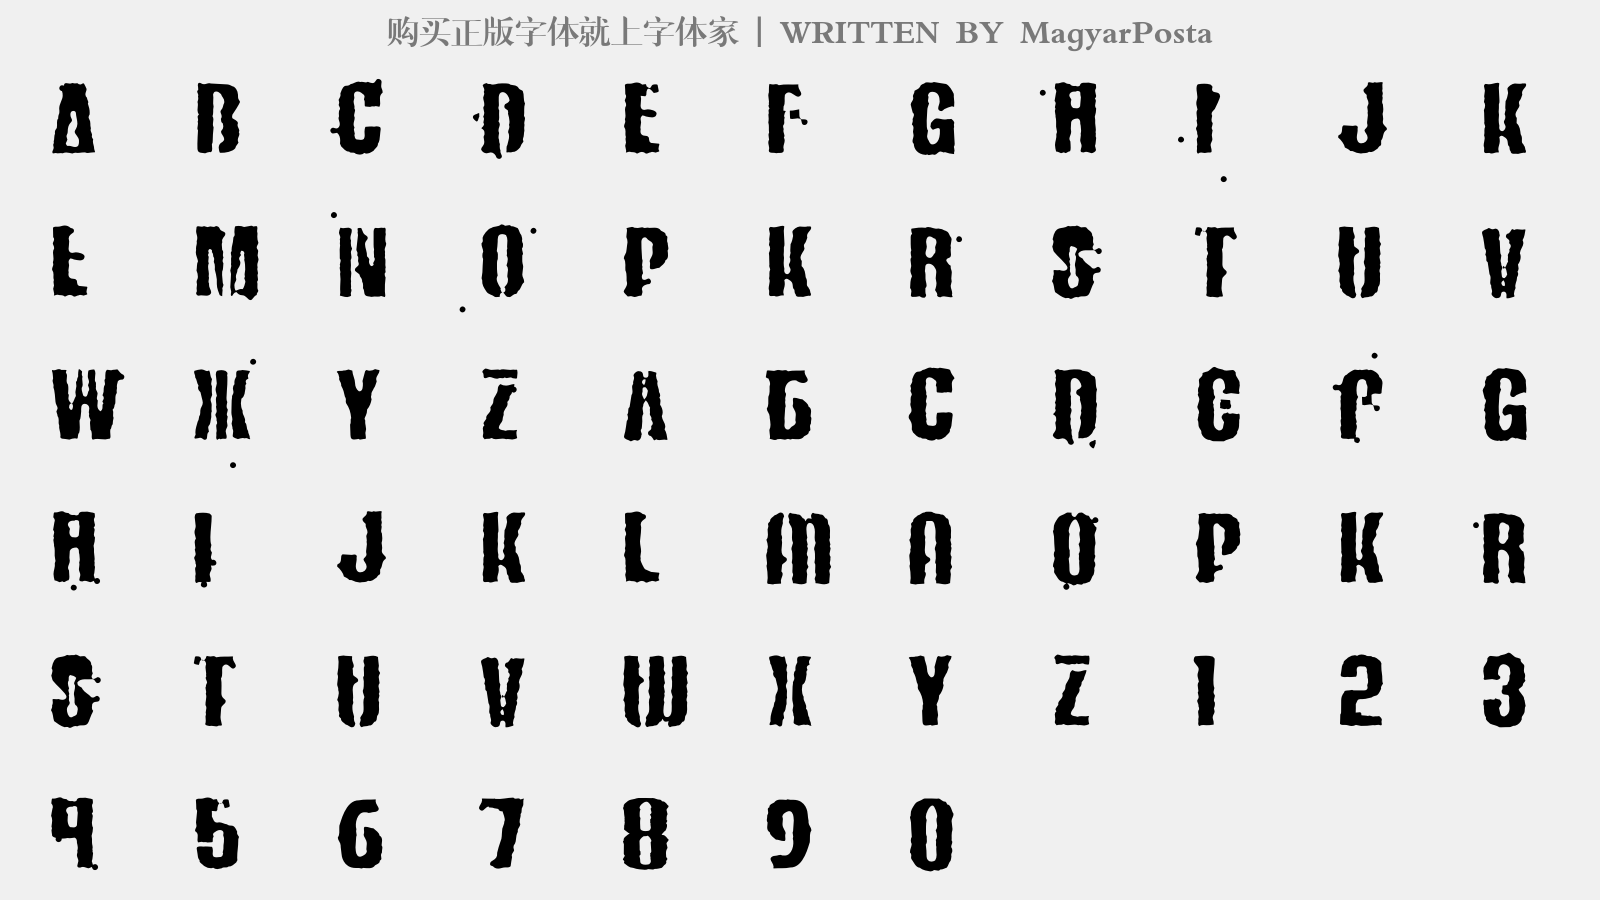 MagyarPosta - 大写字母/小写字母/数字